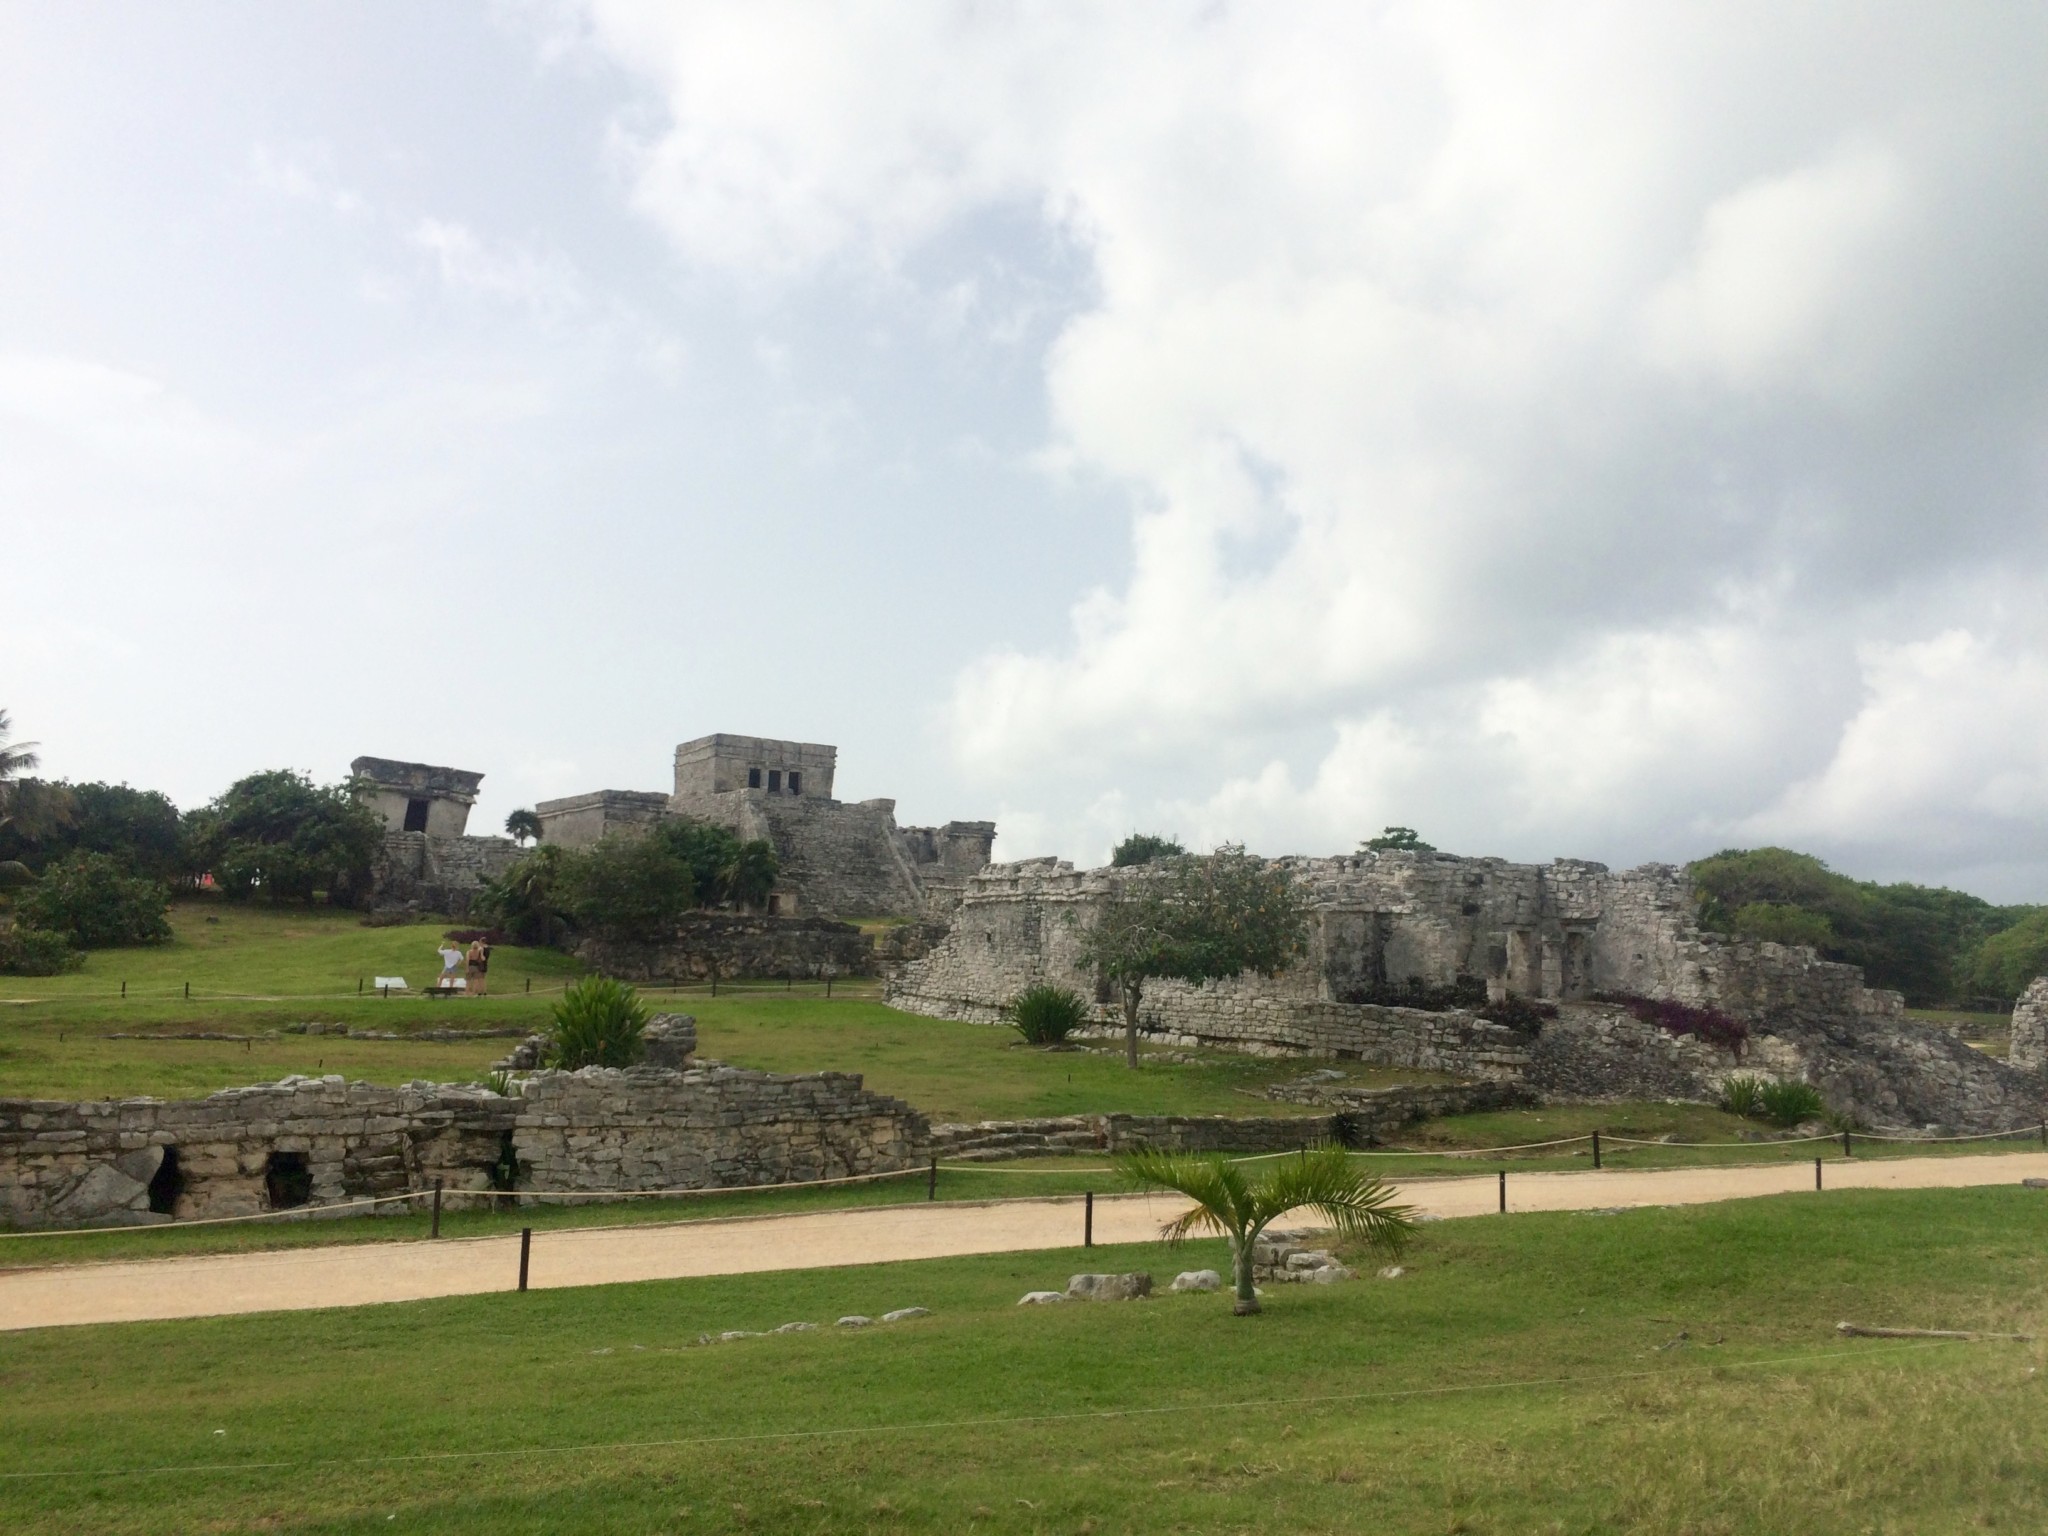 Visiting the Tulum Ruins in Tulum, Mexico